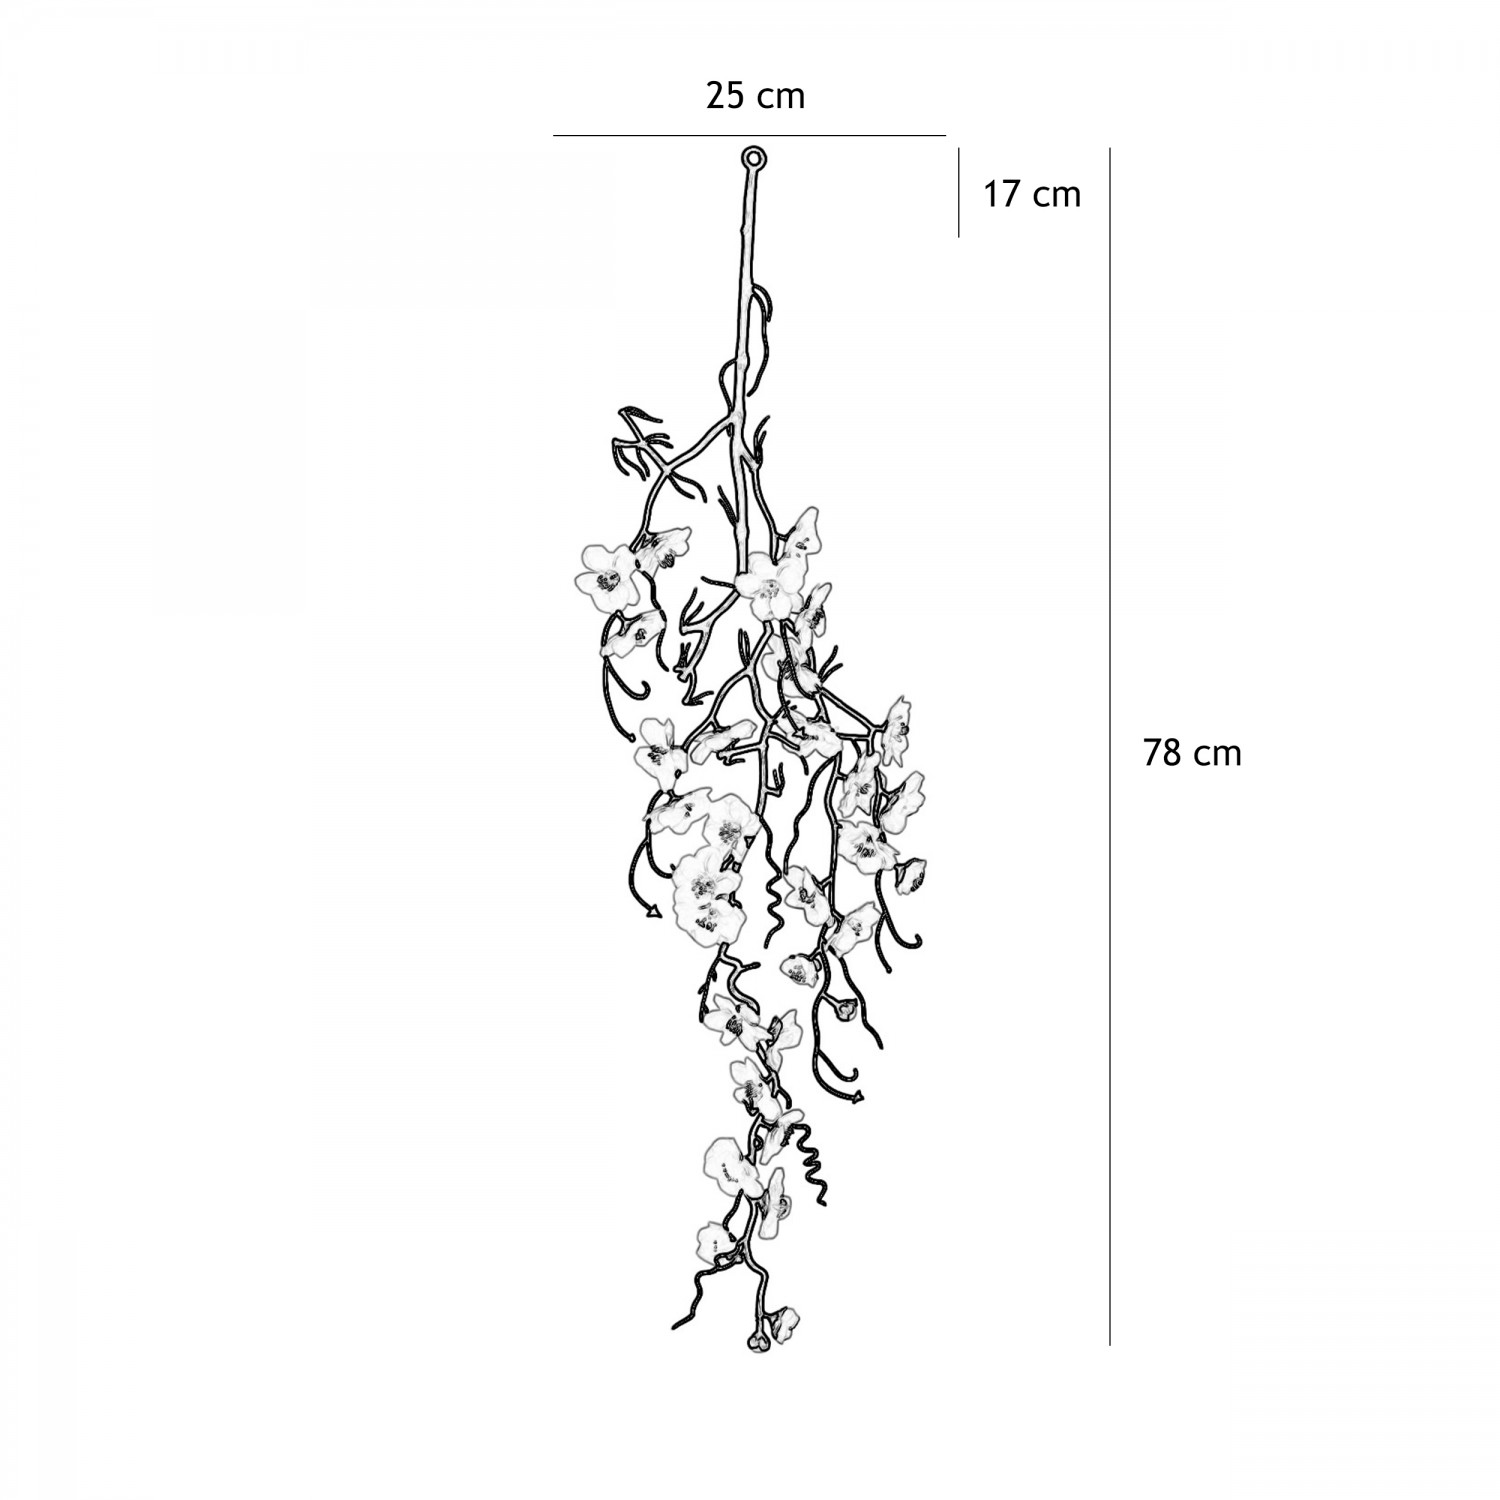 Chute plante artificielle cerisier blanc 78cm lot de 3 graphique avec les dimensions